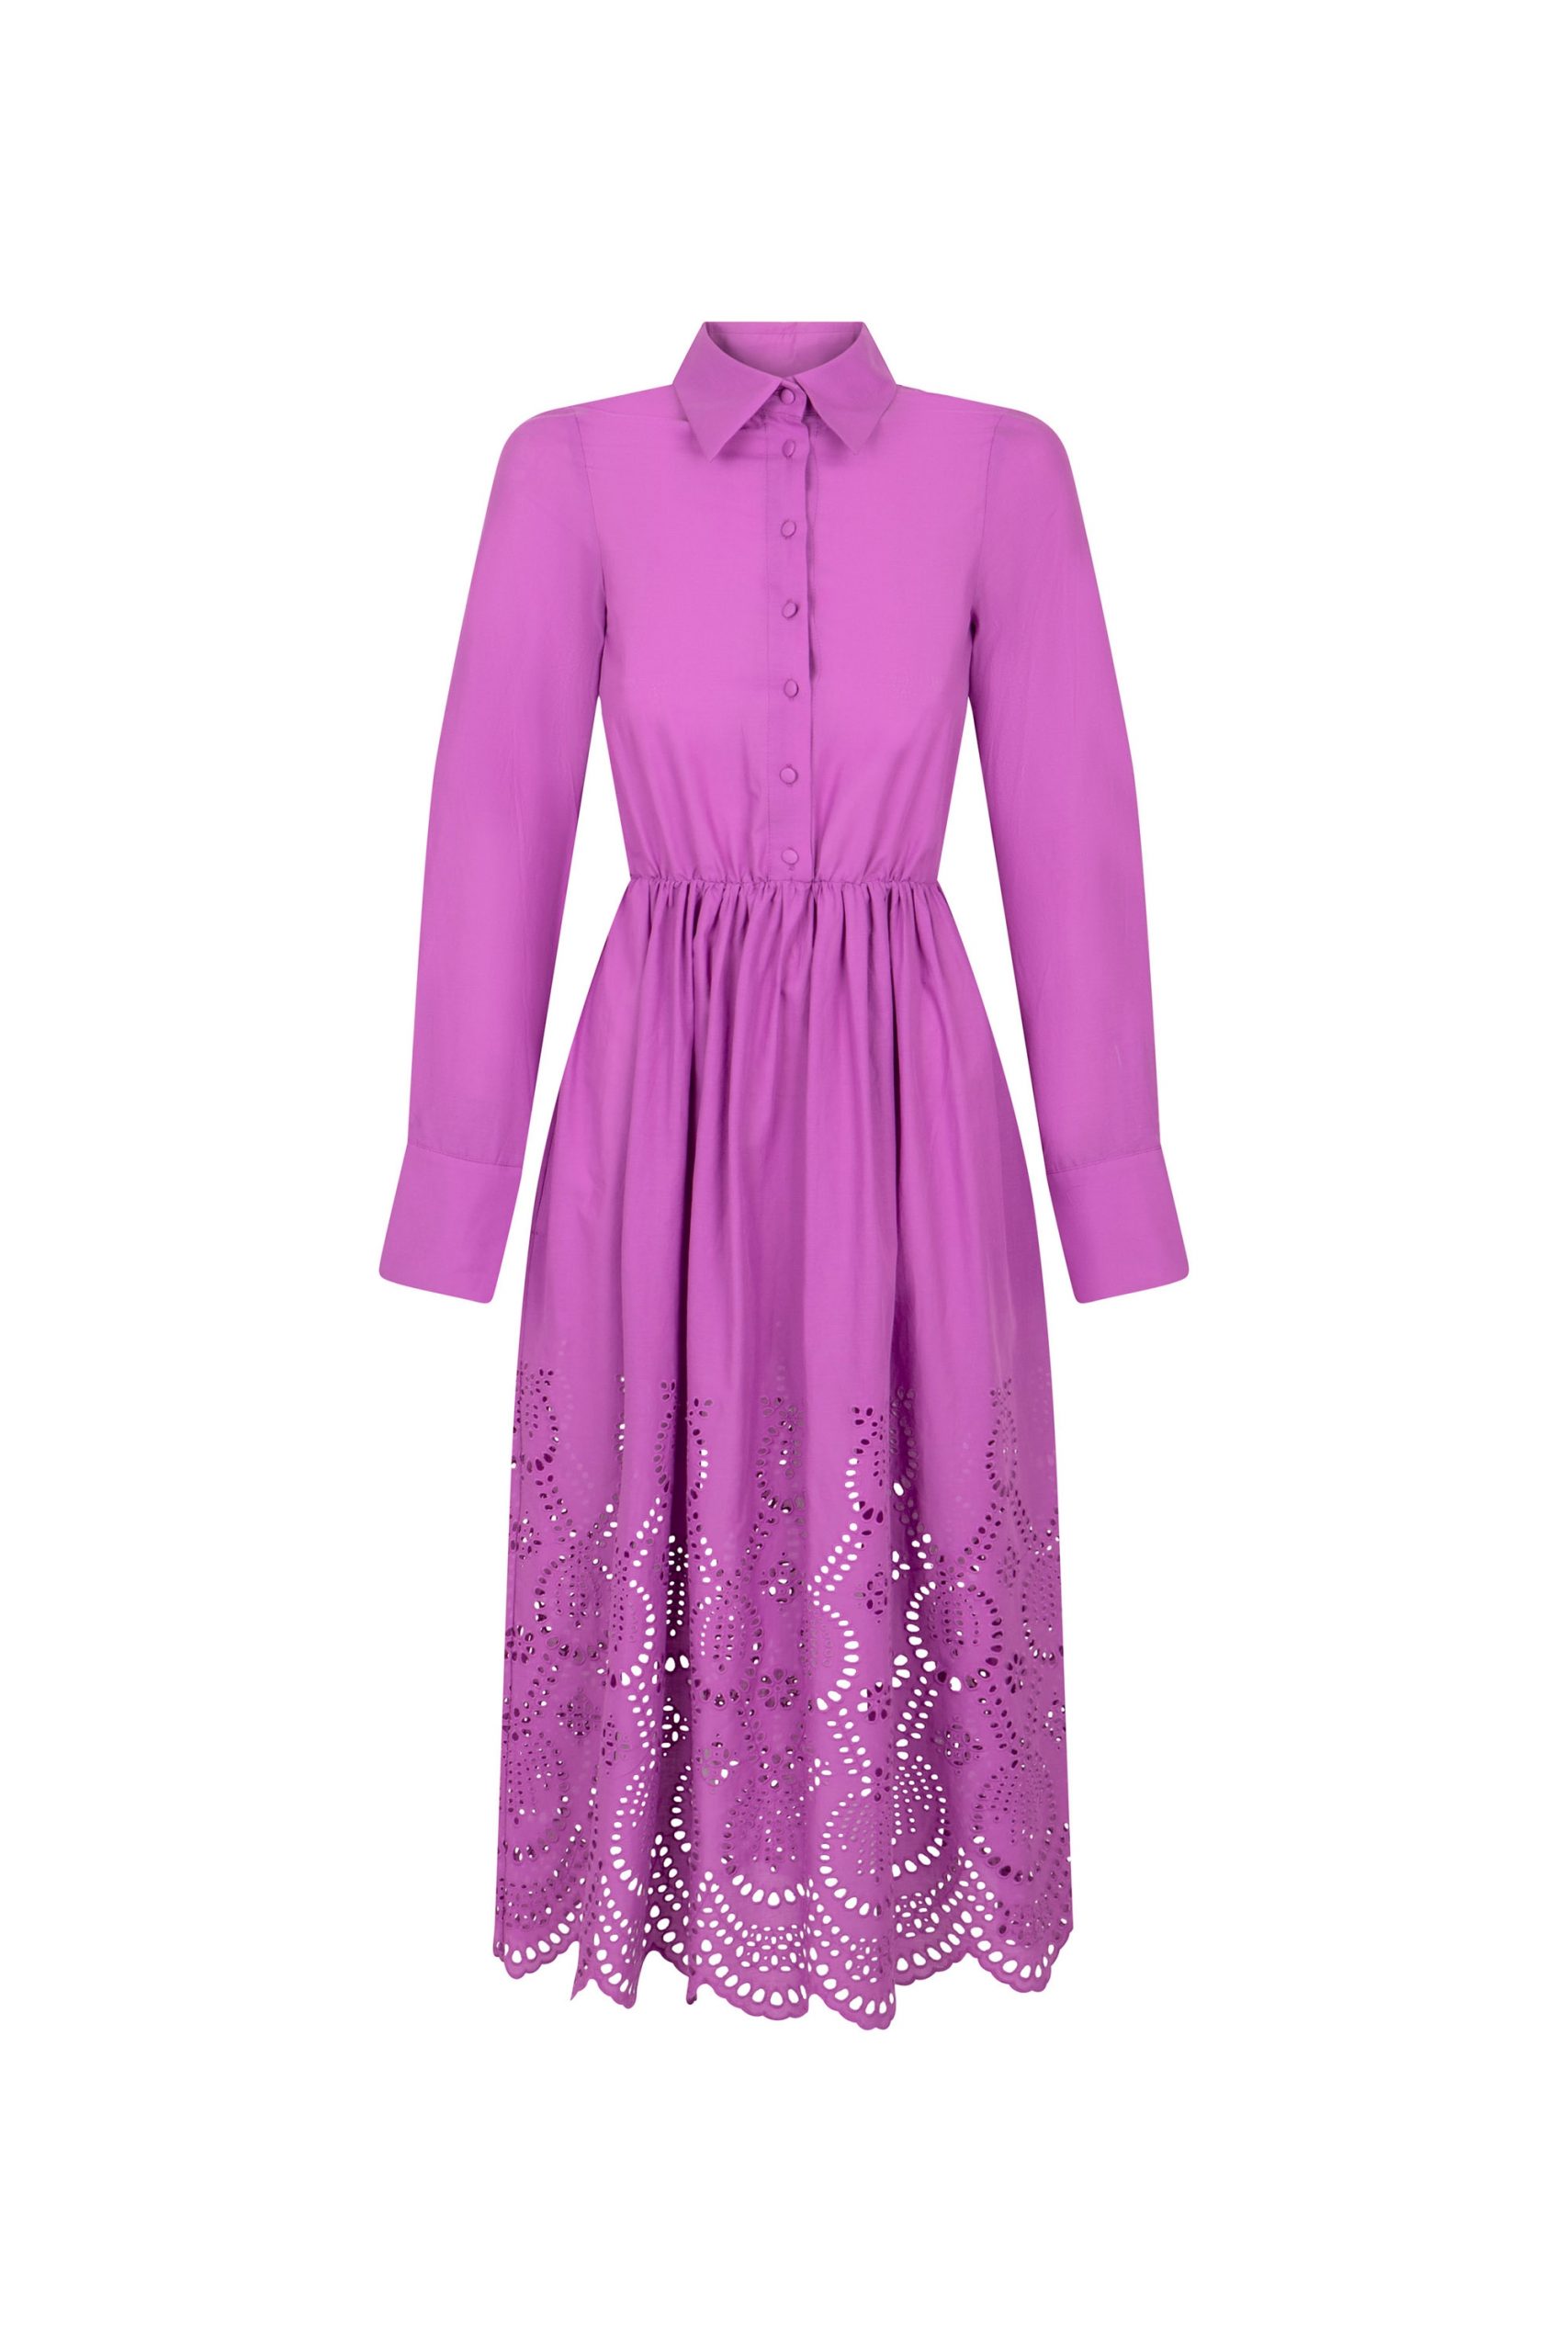 Sukienka fioletowa z haftem